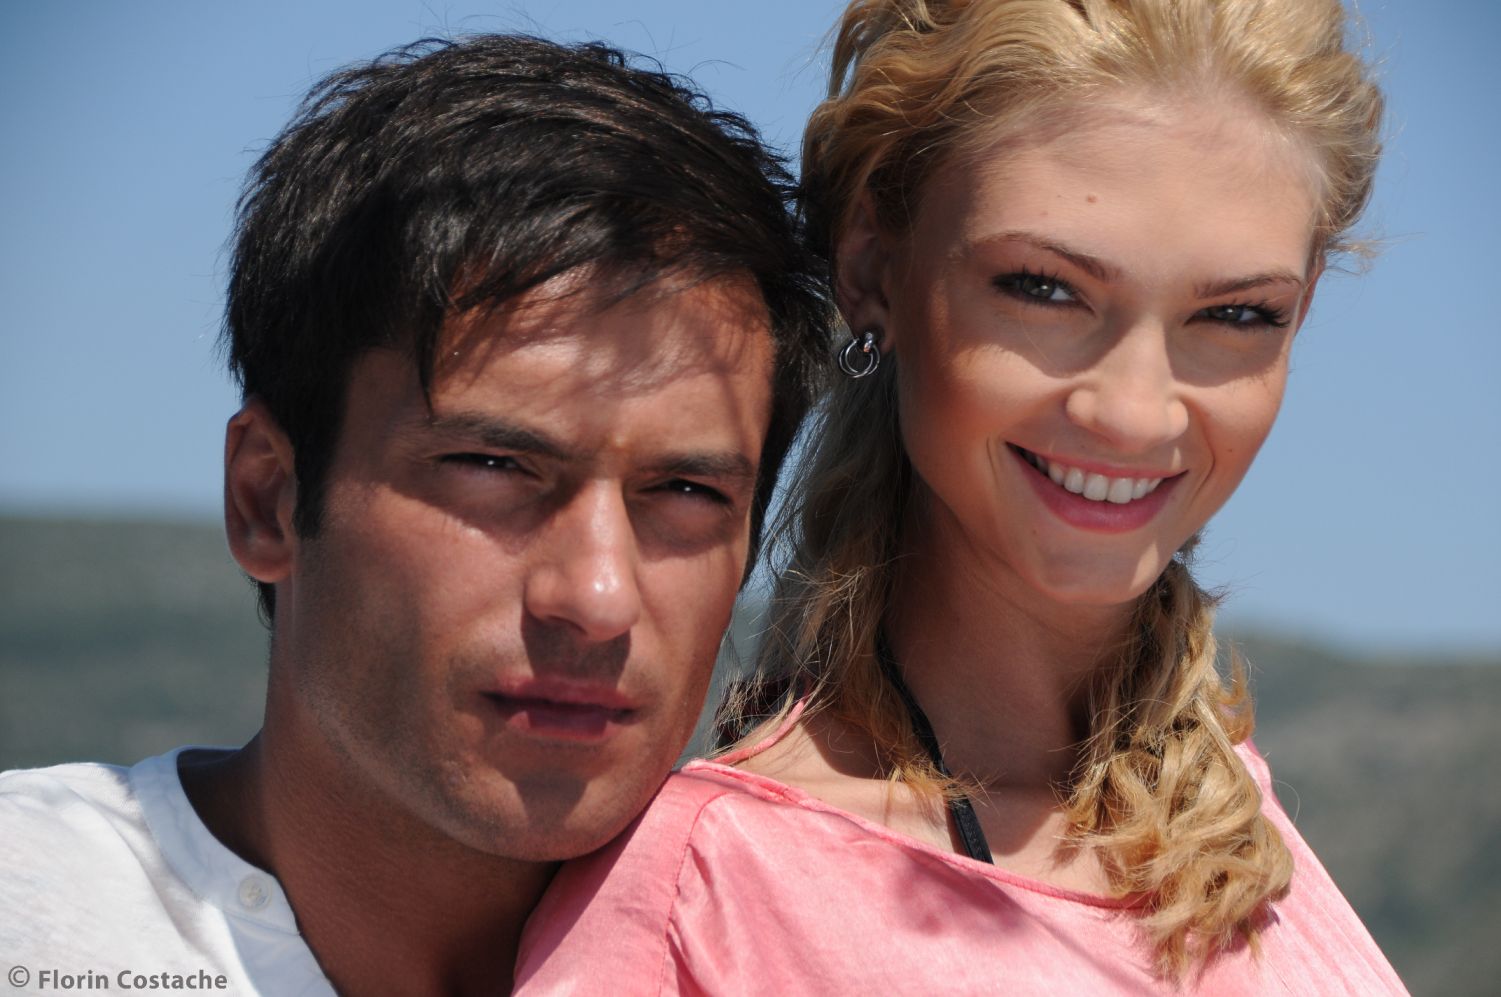 La telenovela cuenta la historia del amor prohibido entre dos jóvenes provenientes de mundos opuestos. Foto: En nombre del honor.